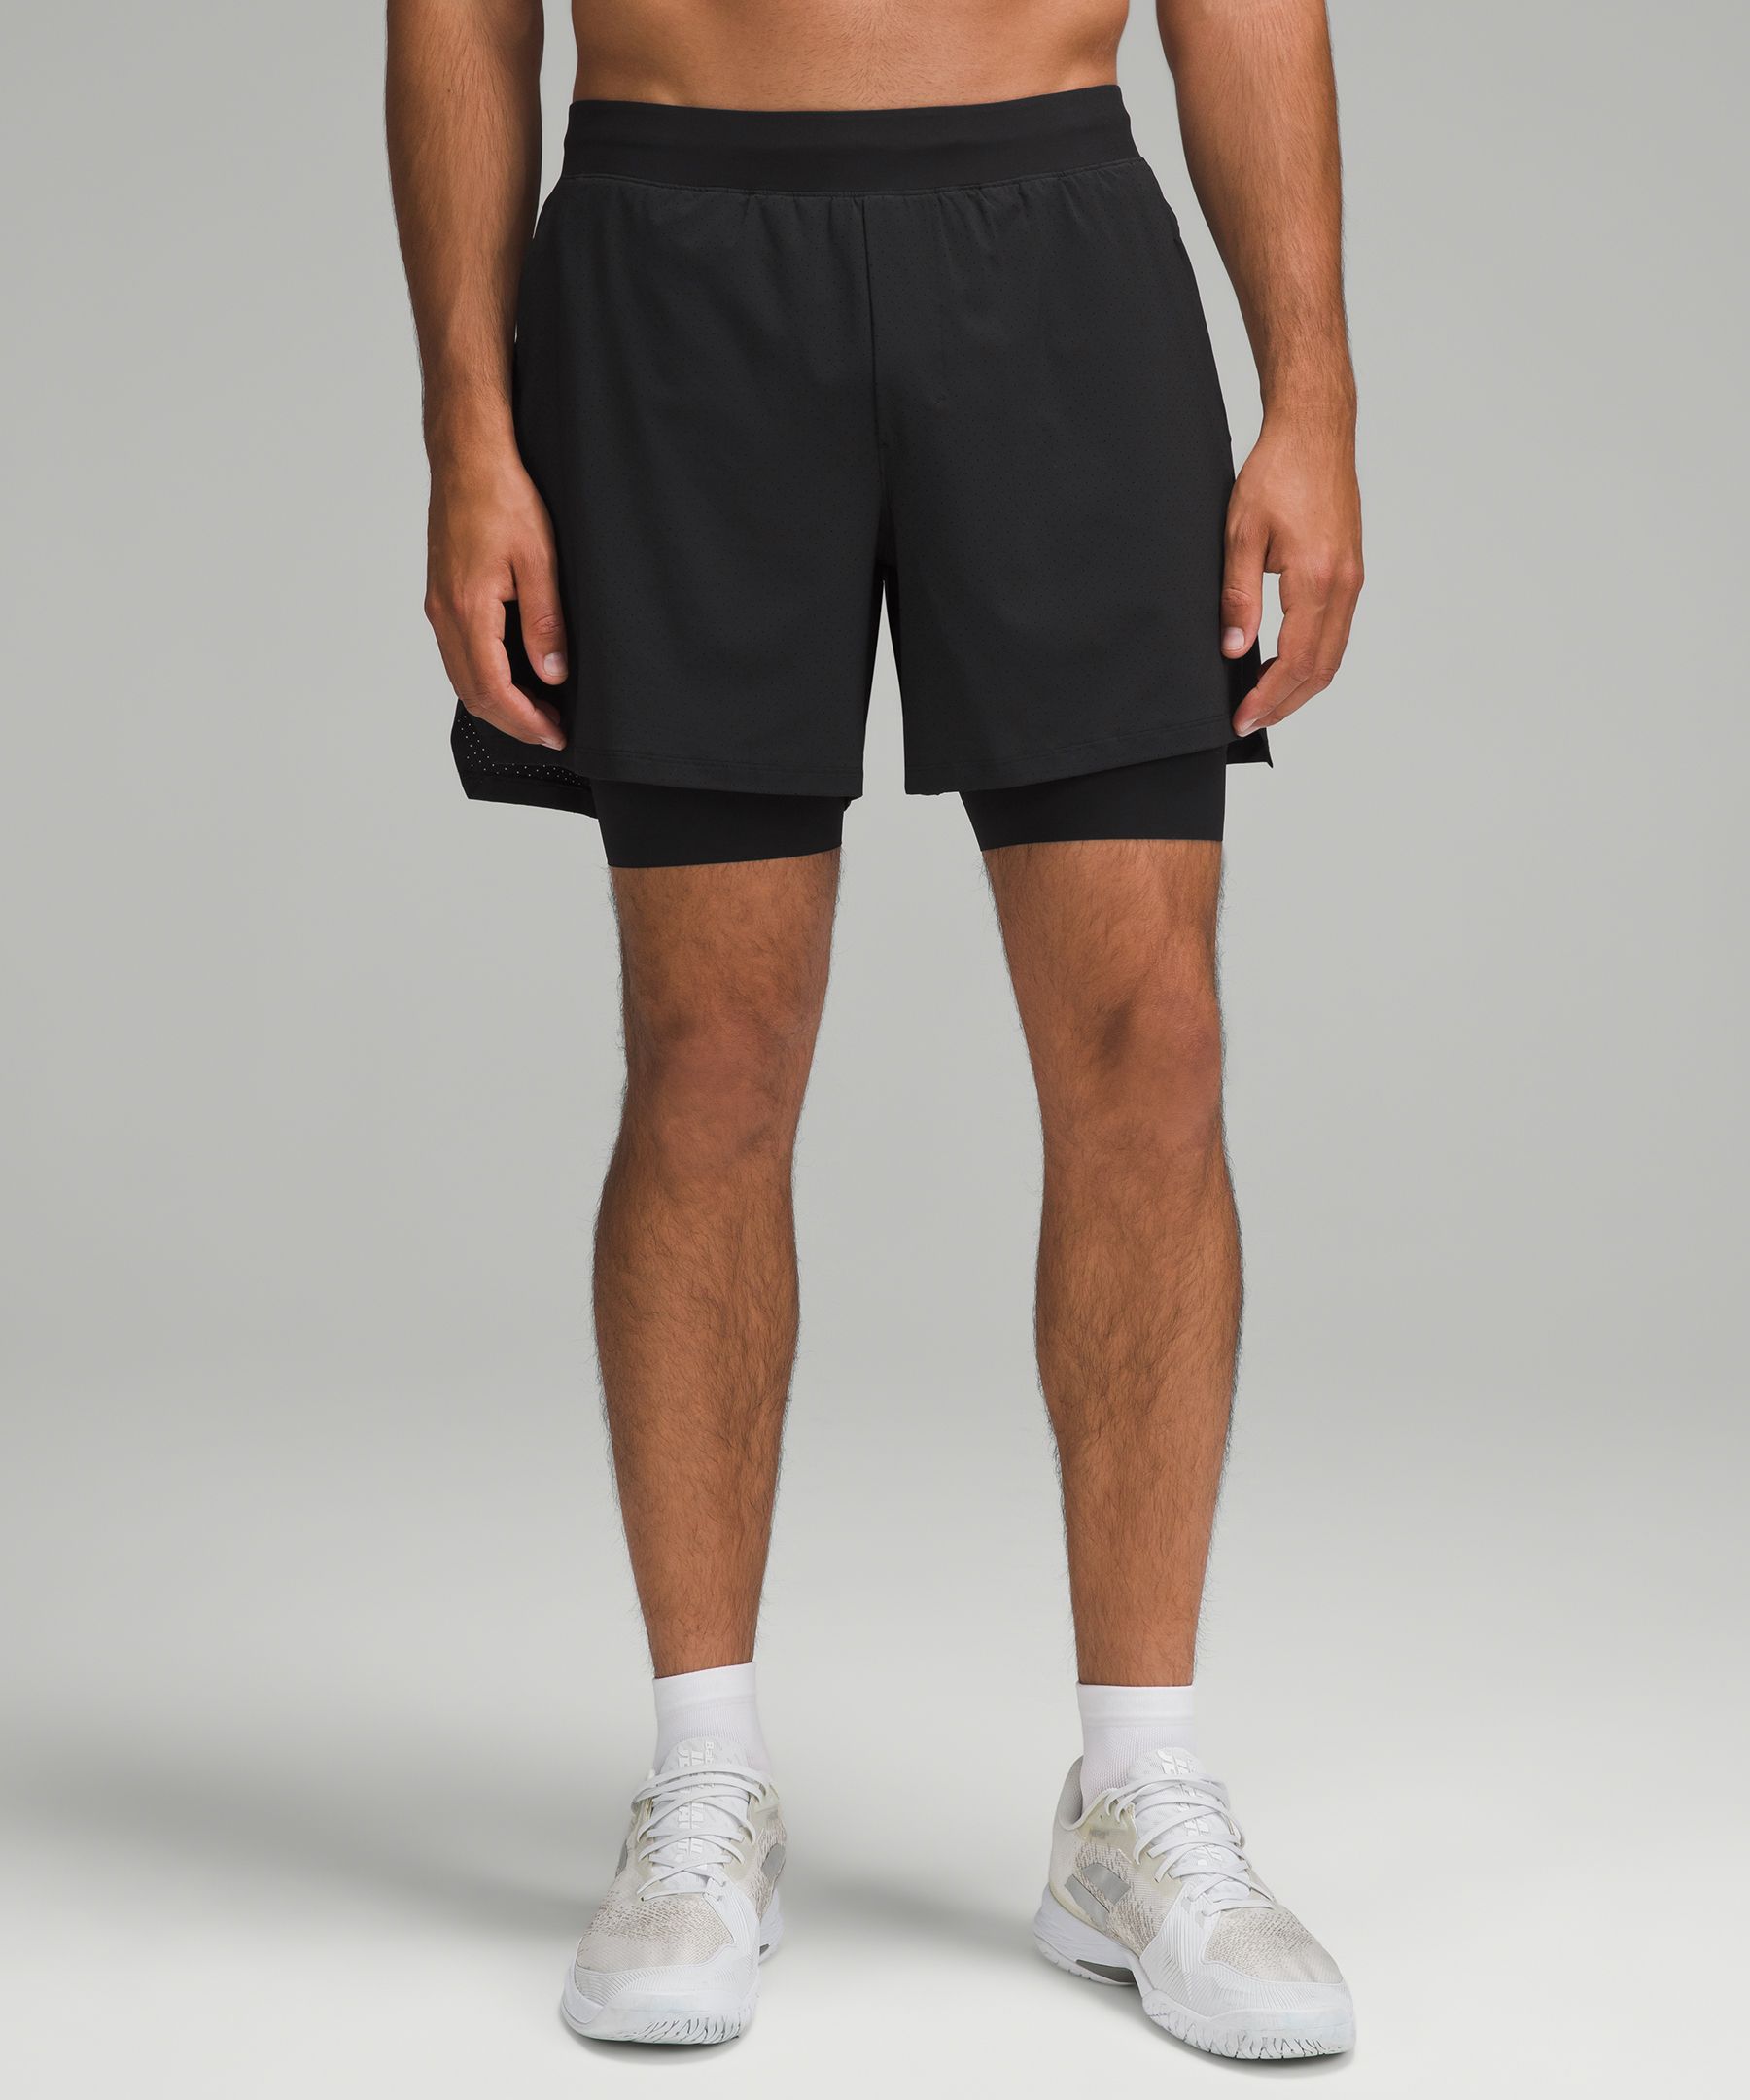 Men's 6 Inch Inseam Shorts